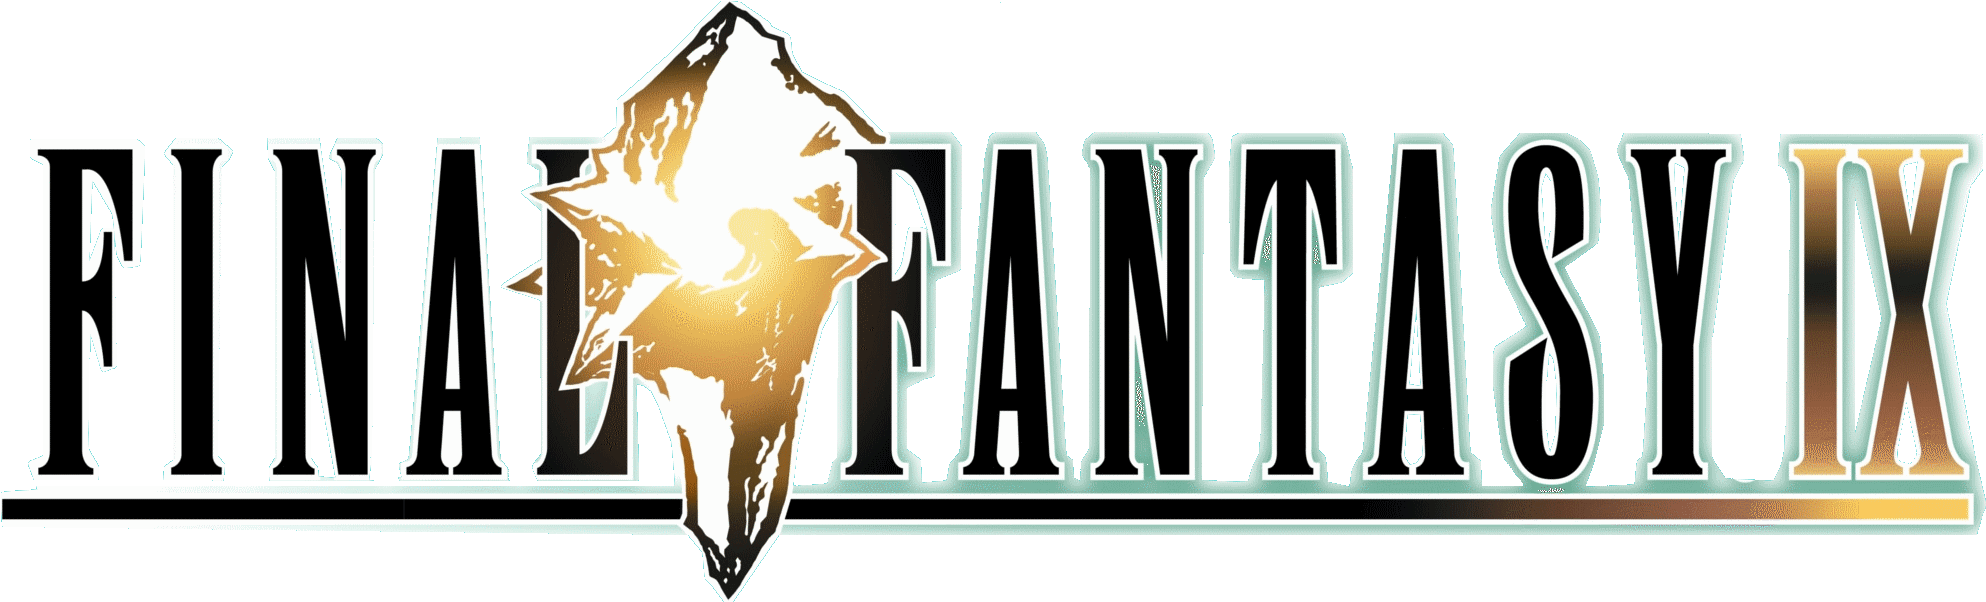 Final Fantasy IX Logo No Background